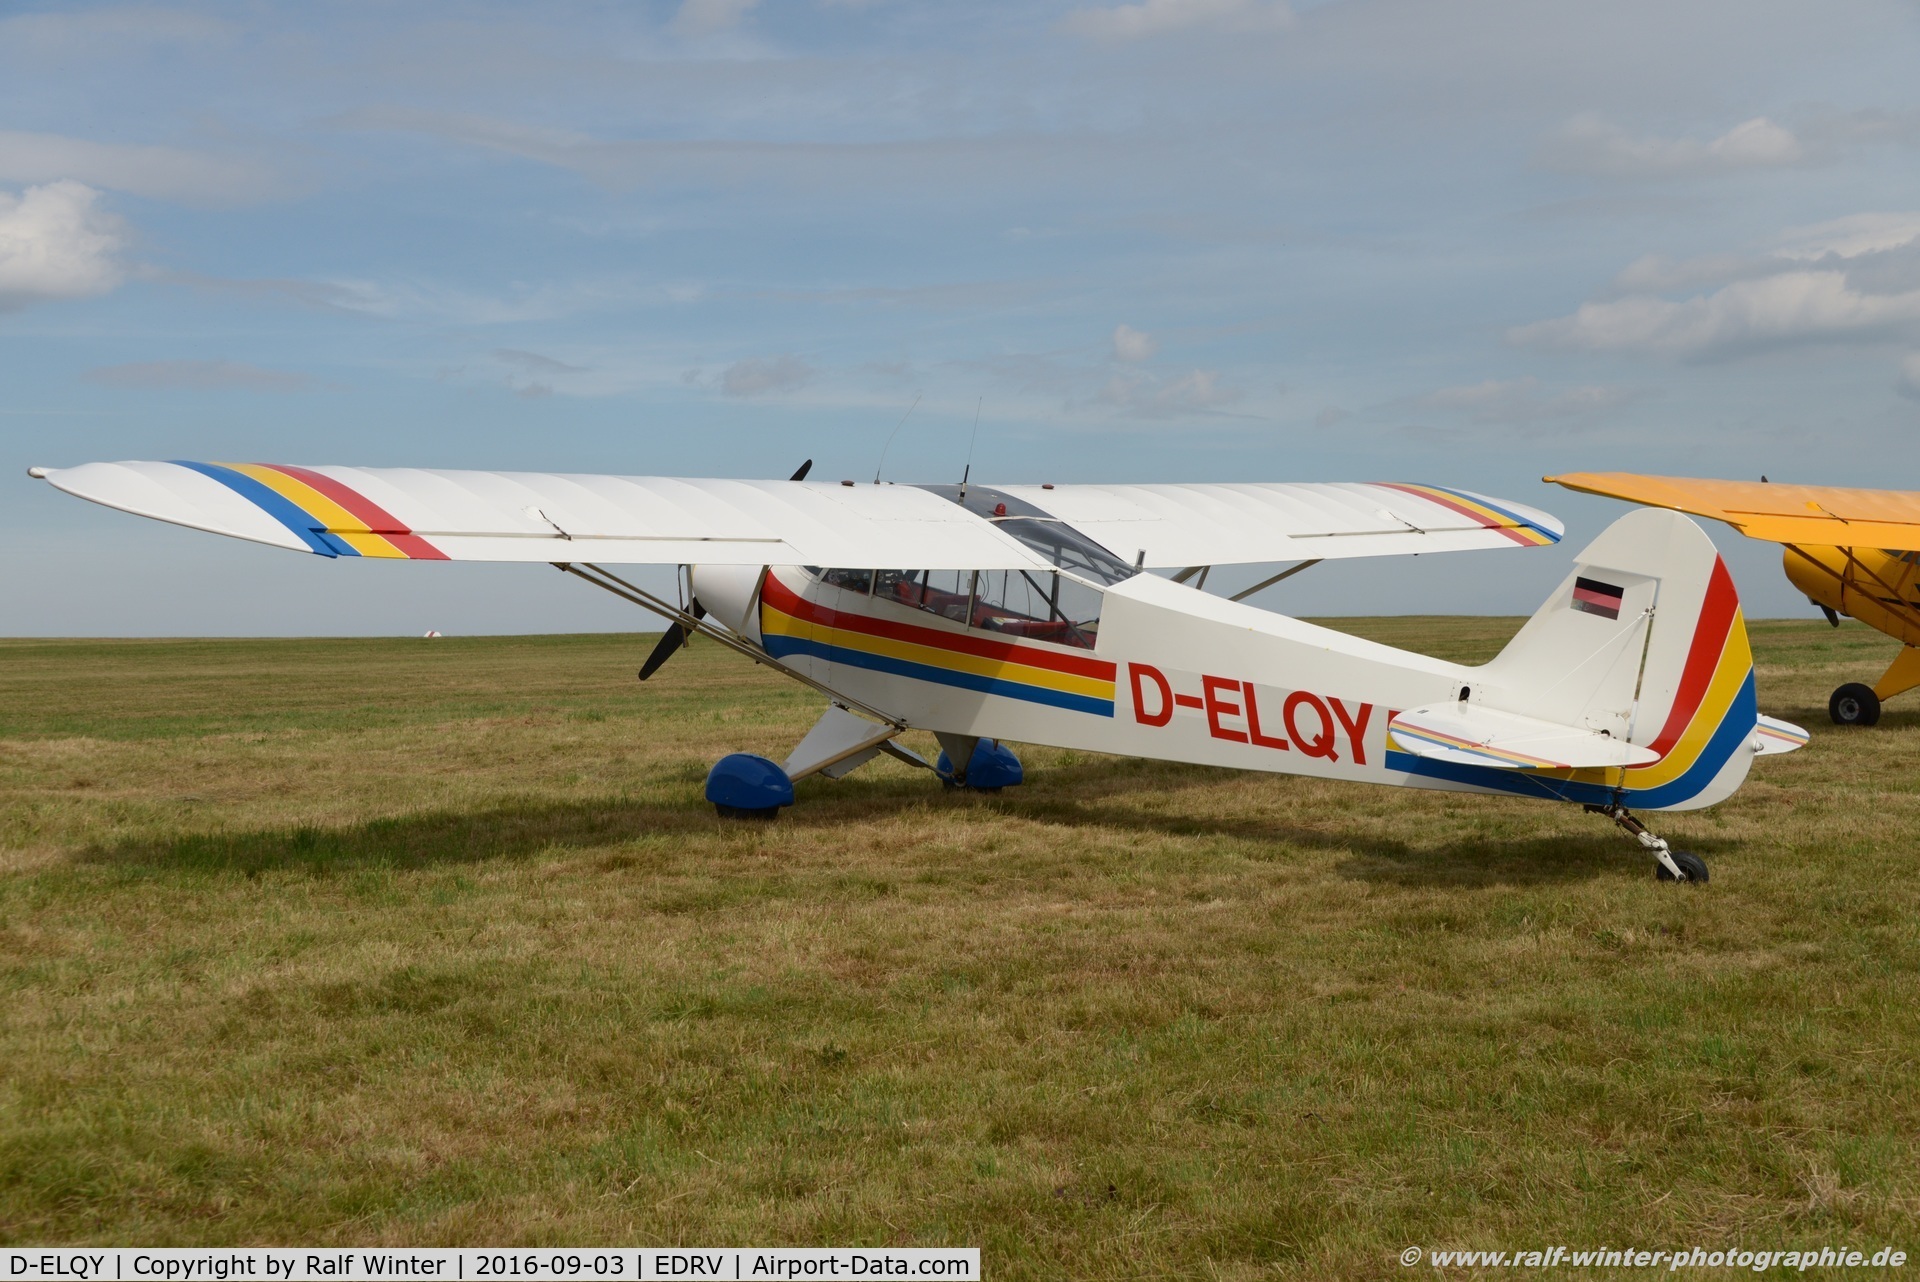 D-ELQY, Piper PA-19 Super Cub C/N 18-3083, Piper PA-18-95 Super Cub - Private - 18-3083 - D-ELQY - 03.09.2016 - EDRV